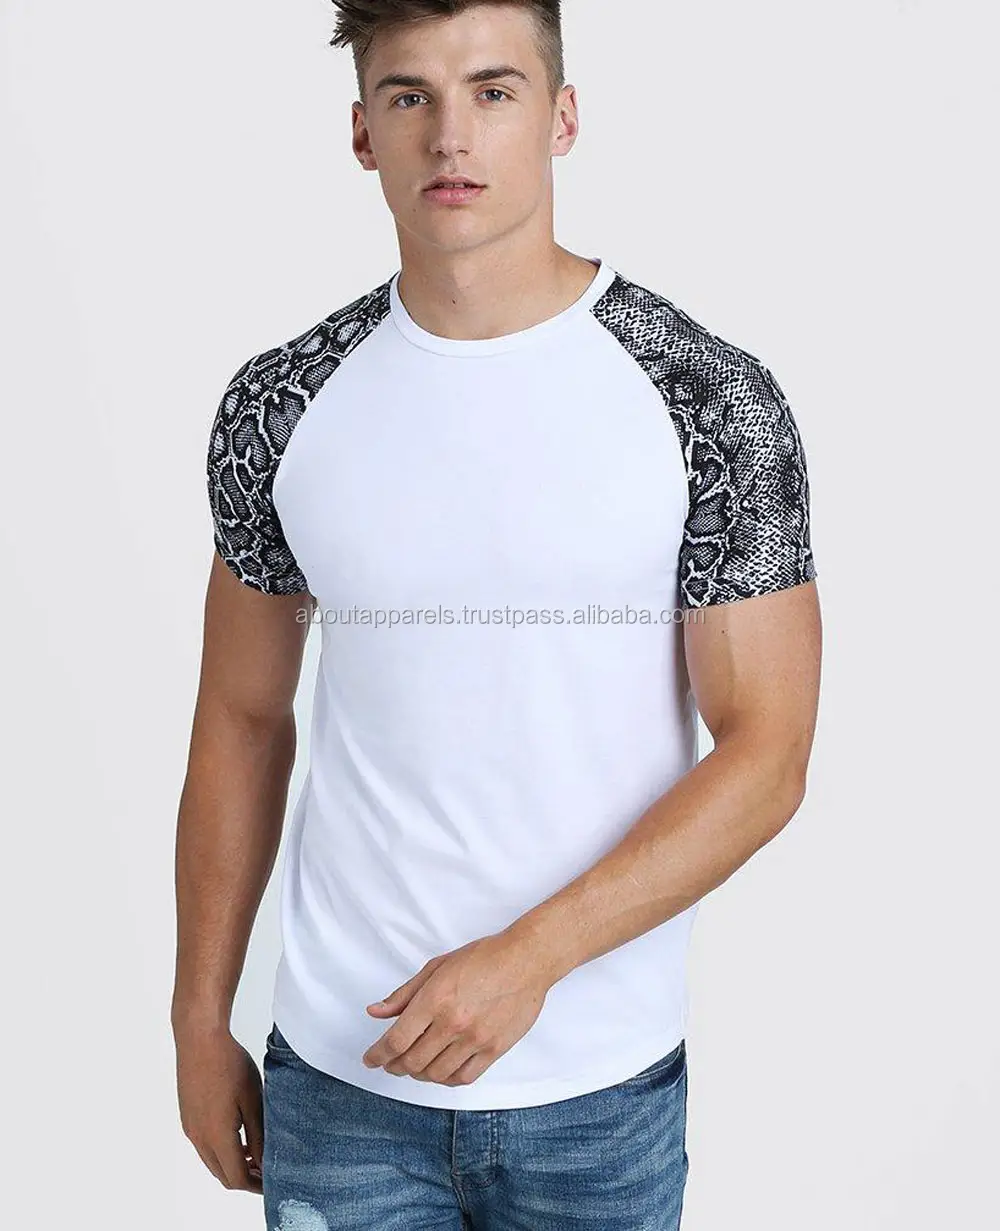 Vendita calda confortevole unisex casual stampa/ricamo maglietta personalizzata traspirante, maglietta originale da uomo con stampa Raglan